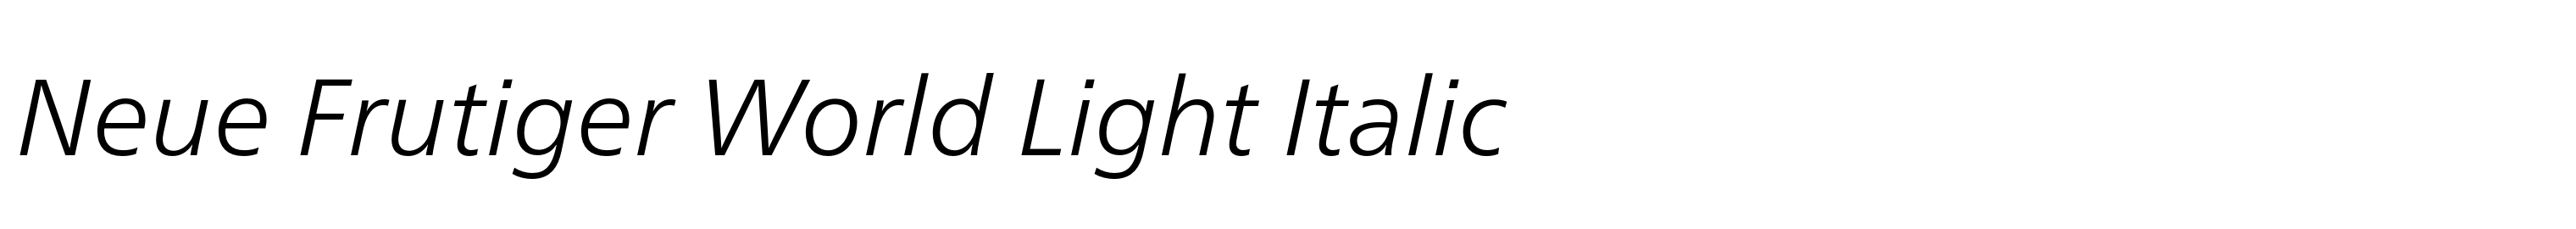 Neue Frutiger World Light Italic